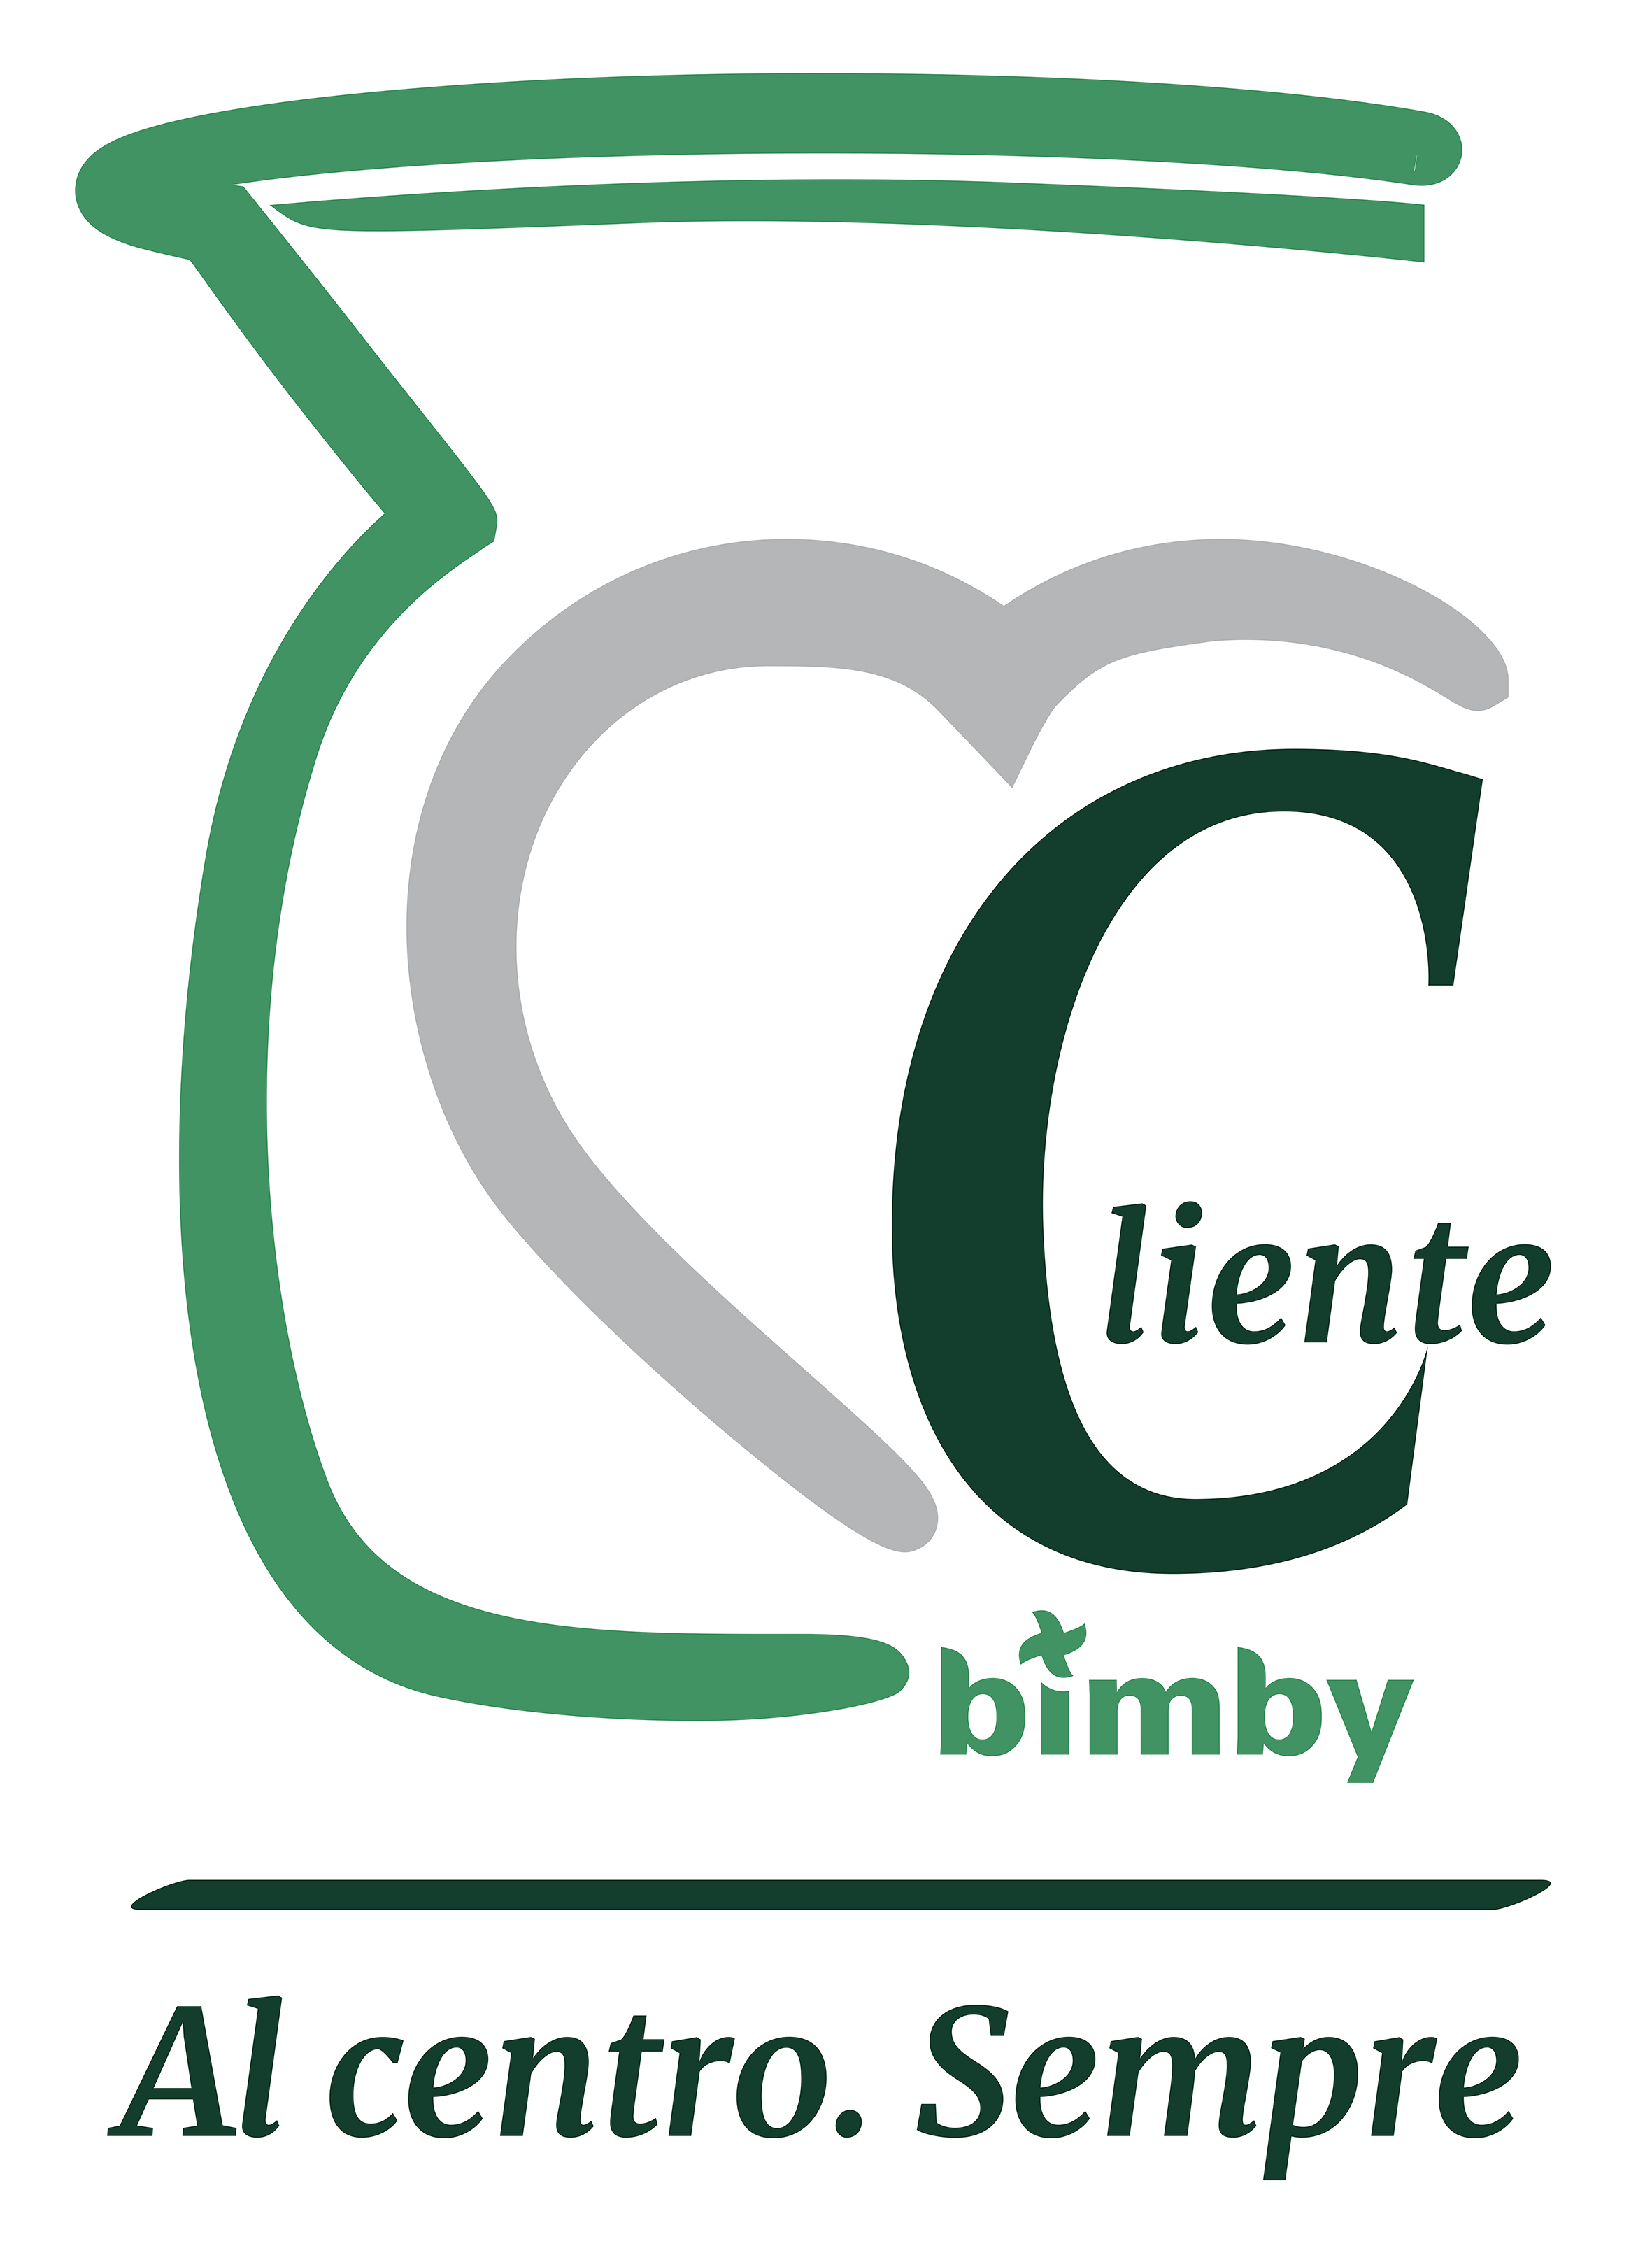 Premiati con Bimby®: scopri il programma fedeltà dedicato ai Clienti Bimby®